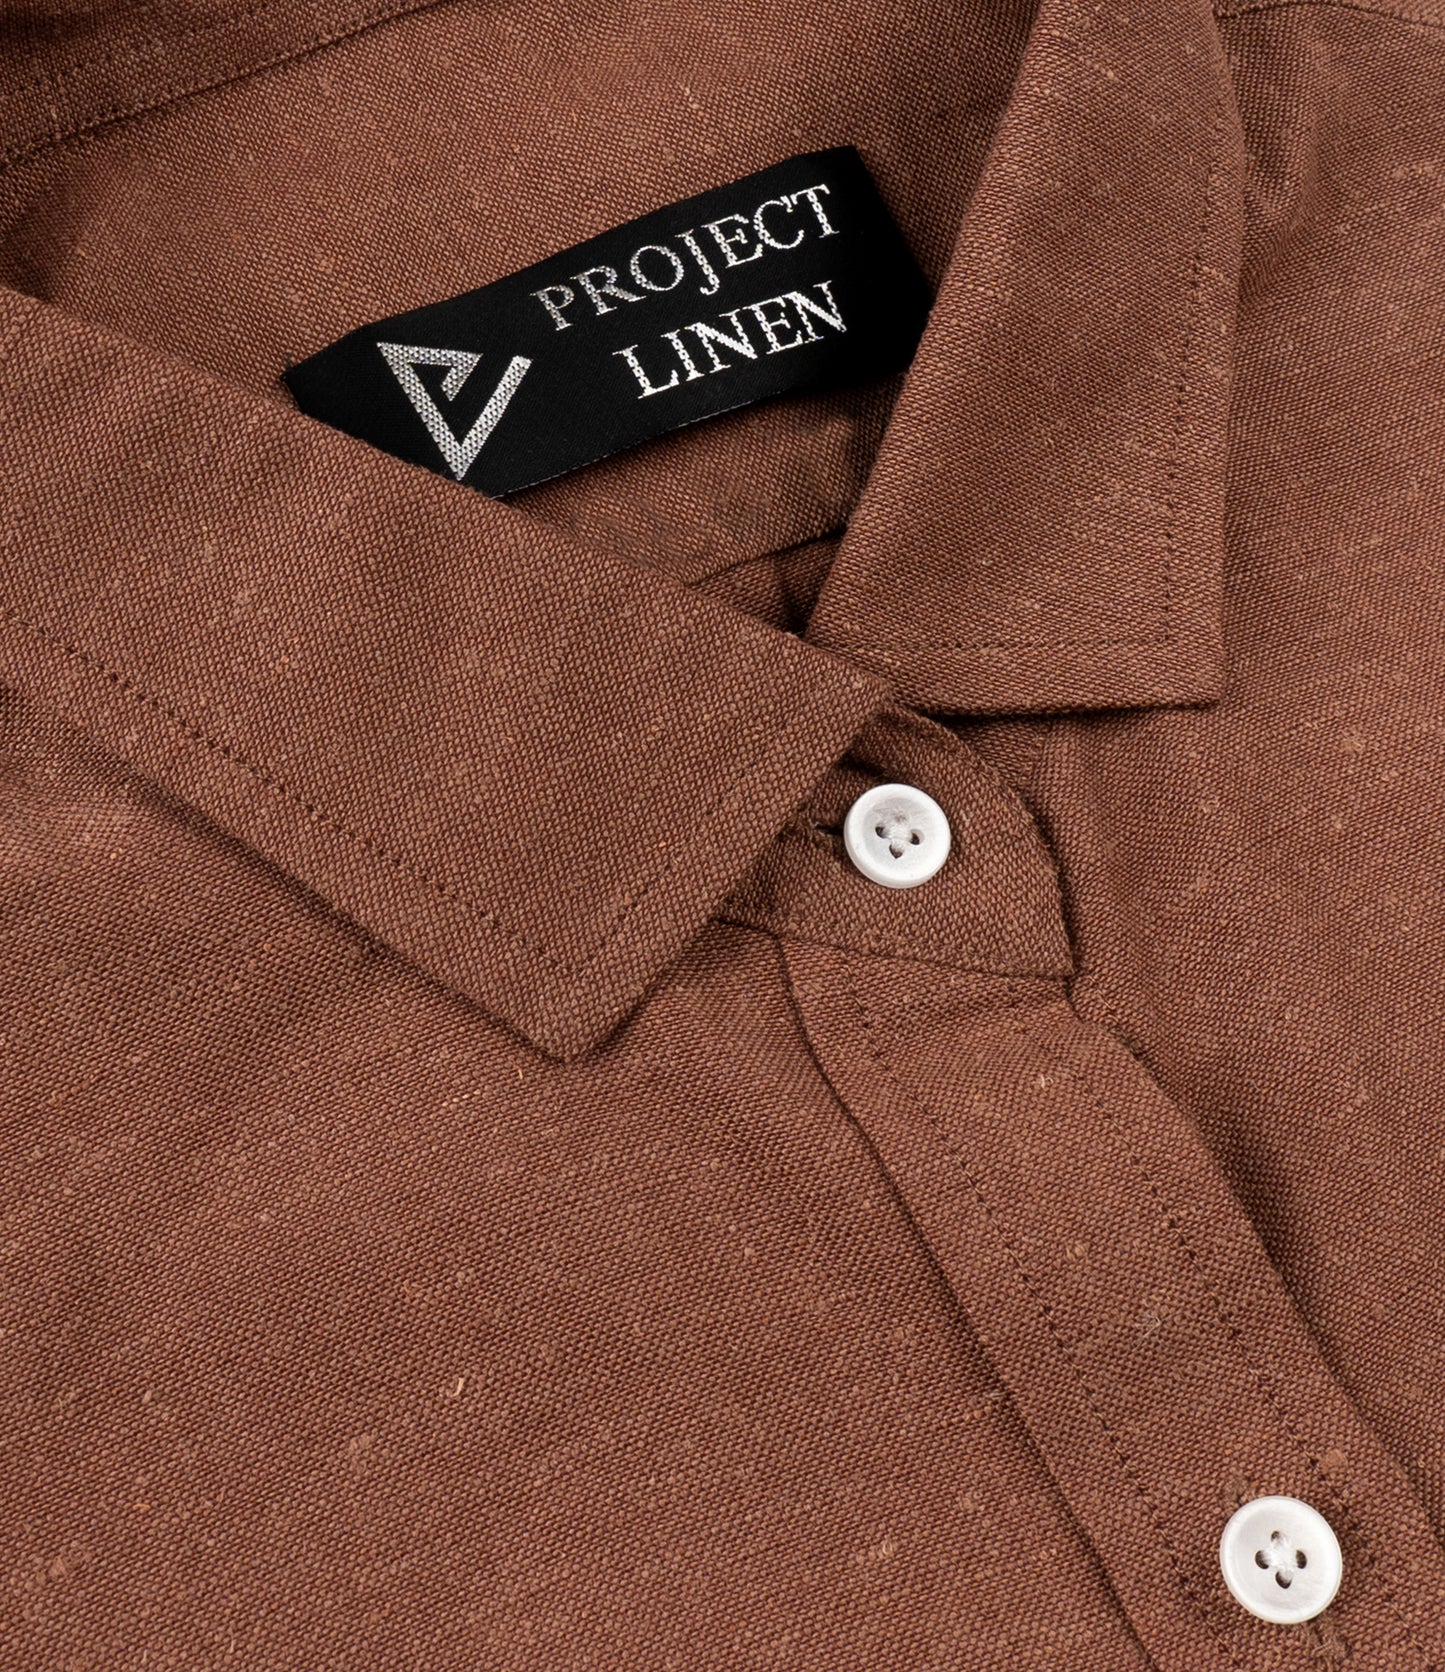 Copper Linen Shirt